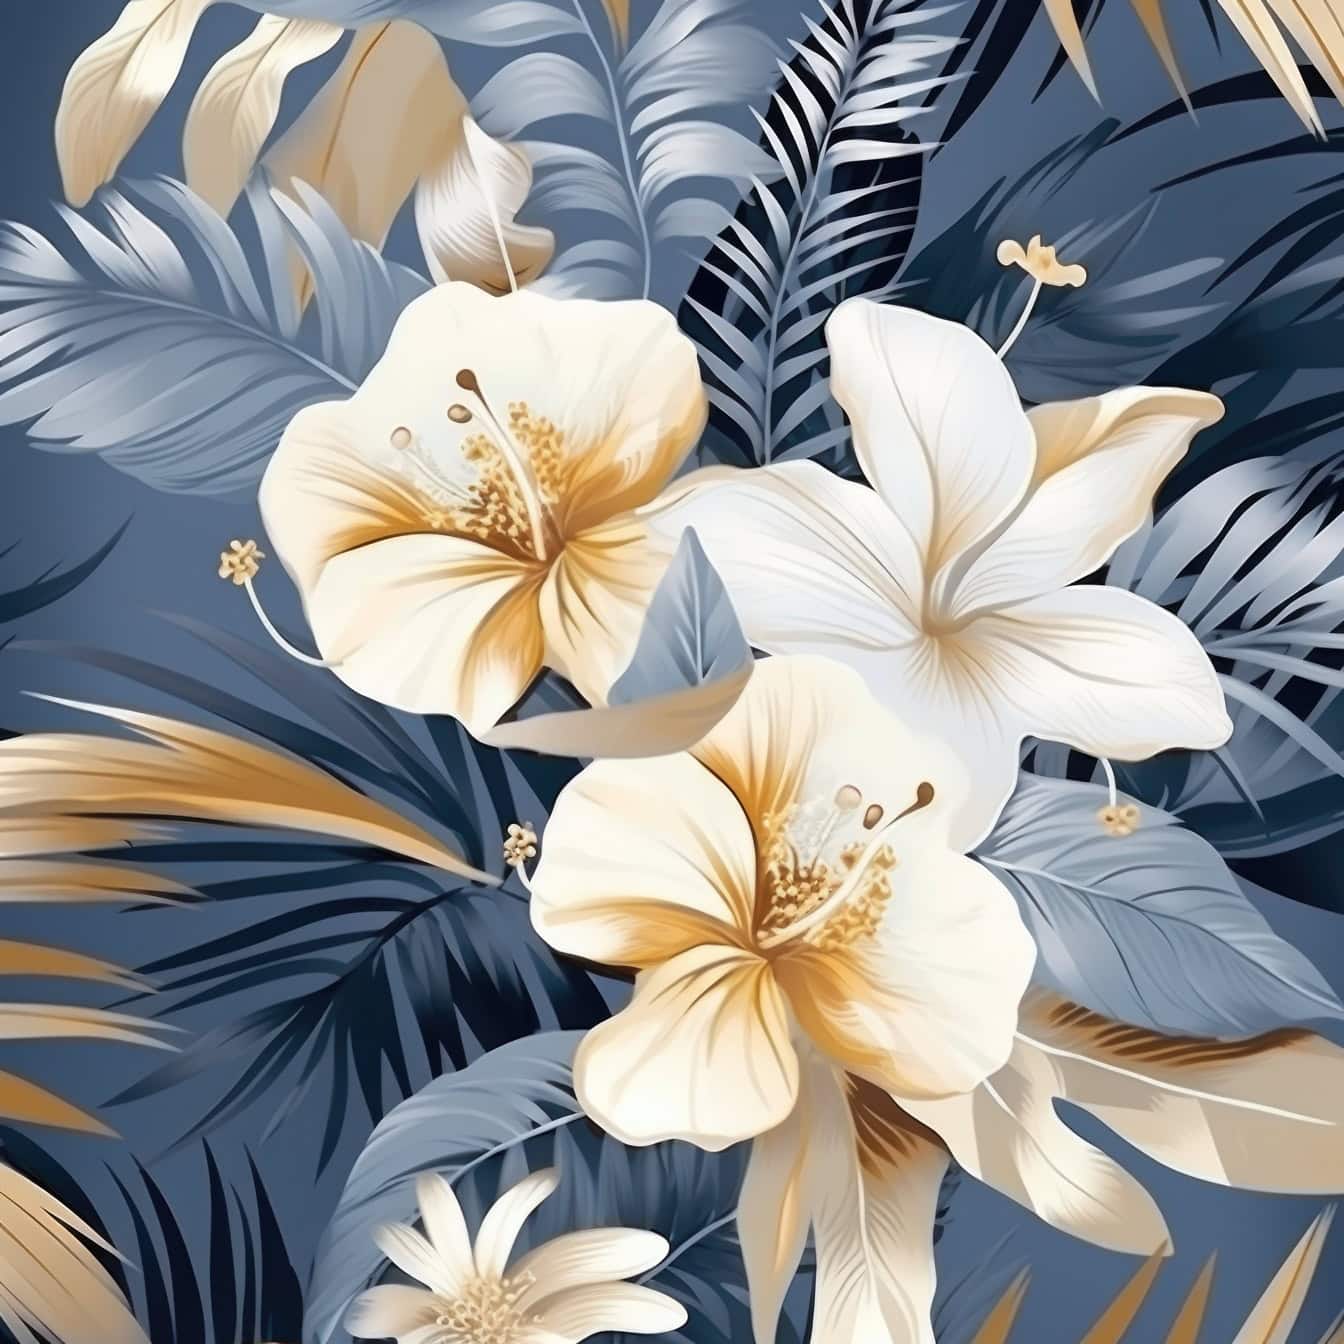 Kwiatowa graficzna ilustracja kwiatów i liści w pastelowych odcieniach niebieskiego i żółtawego